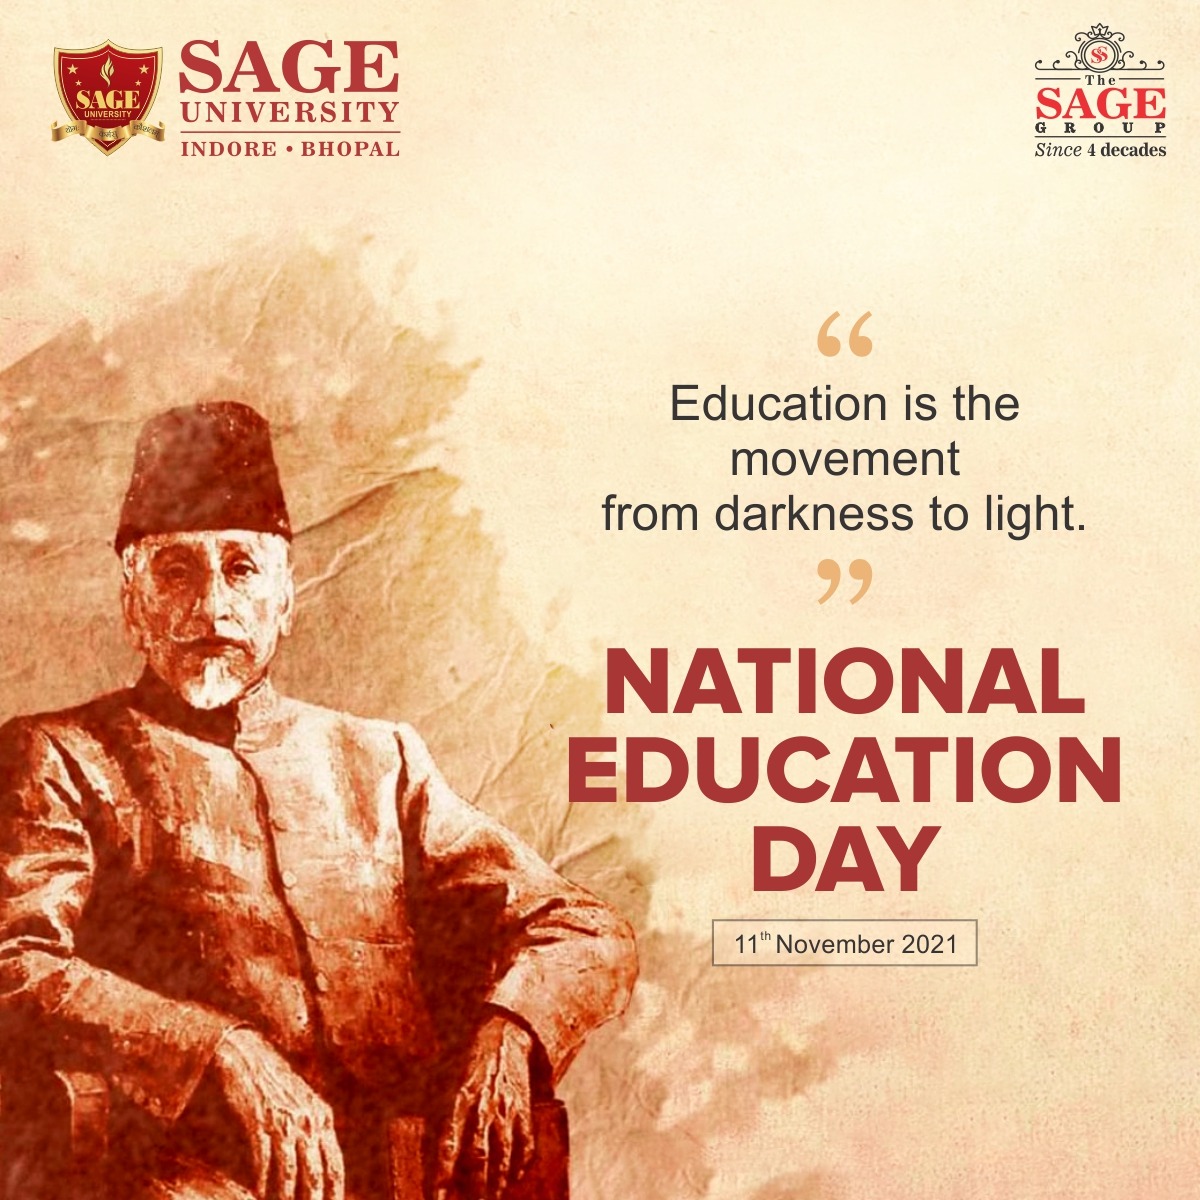 Education is the only way to write bright future
__ 

#NationalEducationDay #Education #MaulanaAbulKalamAzad #EducationDay #FirstEducationMinister #SUI #SAGEUniversityIndore